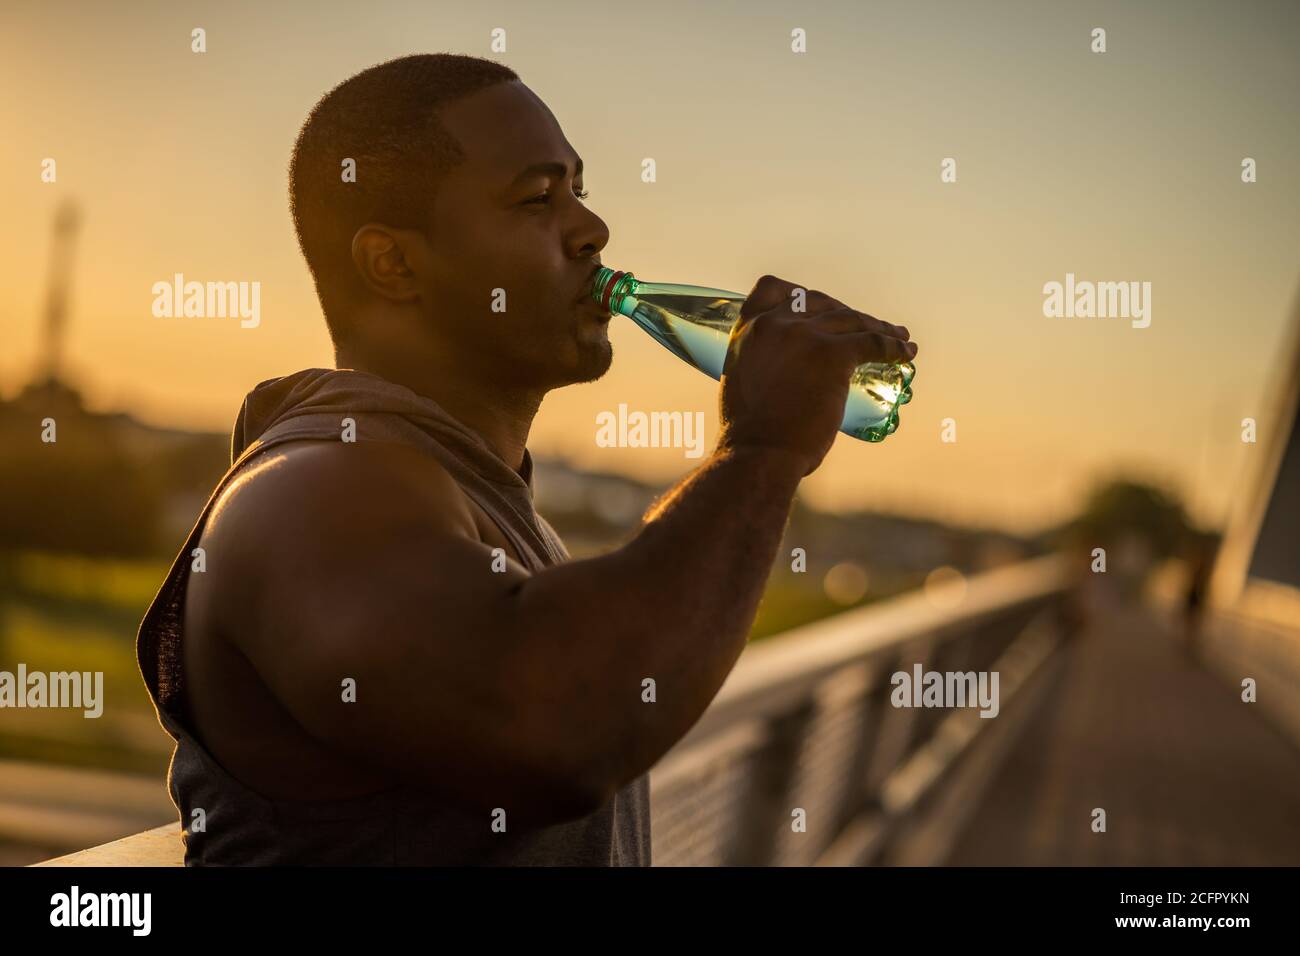 Der junge afroamerikanische Mann trinkt nach dem Training auf der Brücke in der Stadt Wasser. Stockfoto